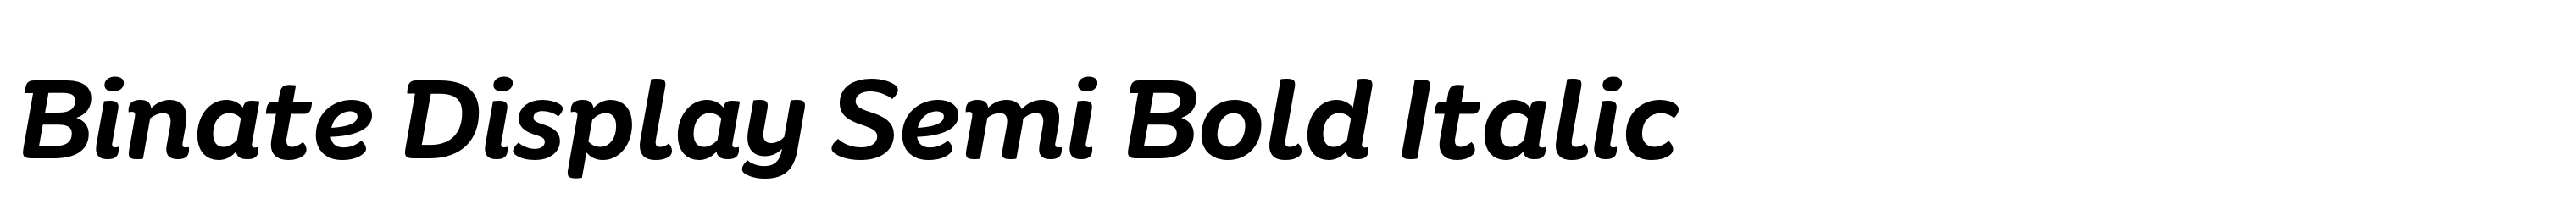 Binate Display Semi Bold Italic